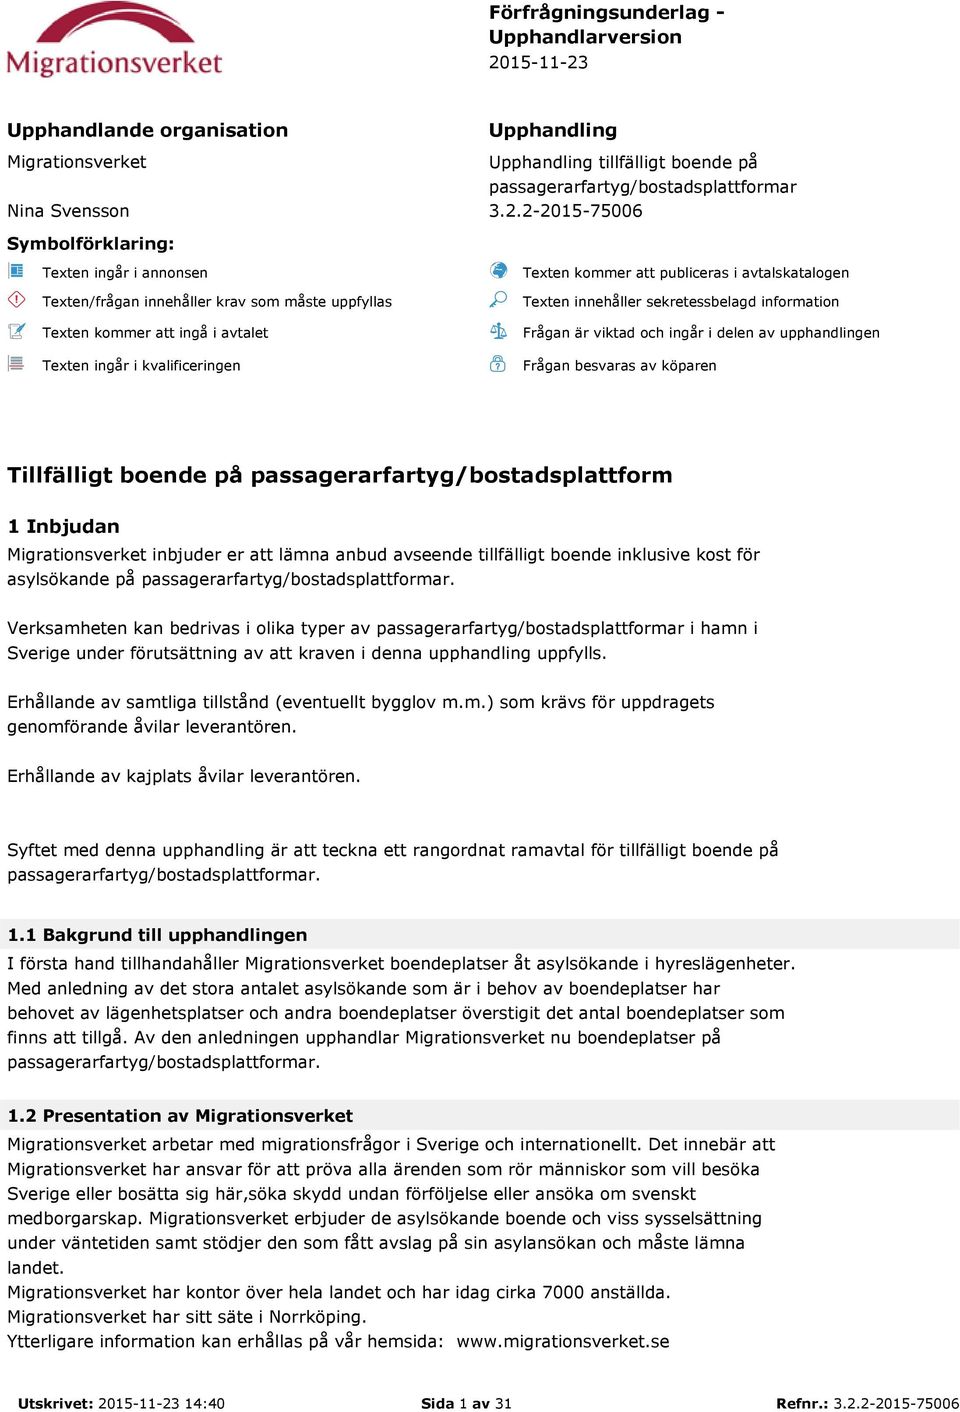 Upphandlande organisation Upphandling Migrationsverket Upphandling tillfälligt boende på passagerarfartyg/bostadsplattformar Nina Svensson 3.2.